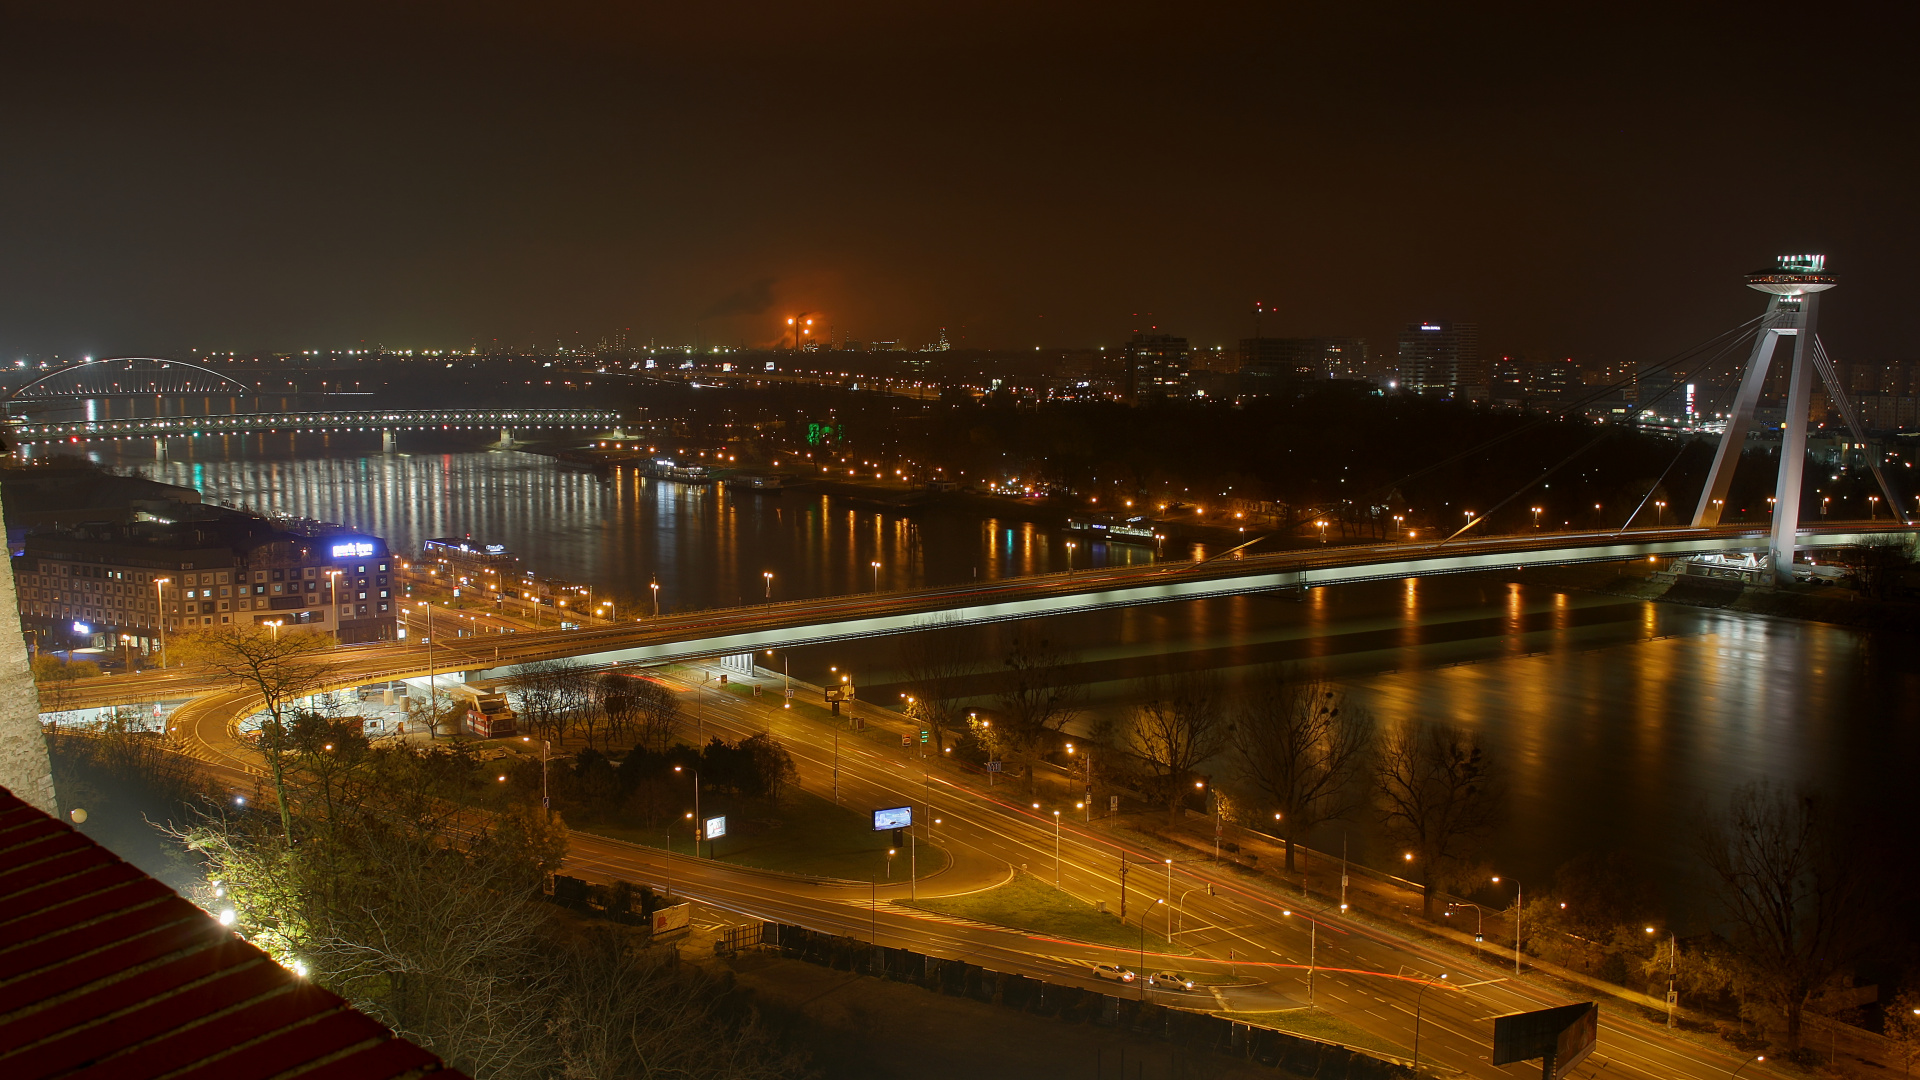 Dunaj i część południowa (Podróże » Bratysława » Miasto w nocy)